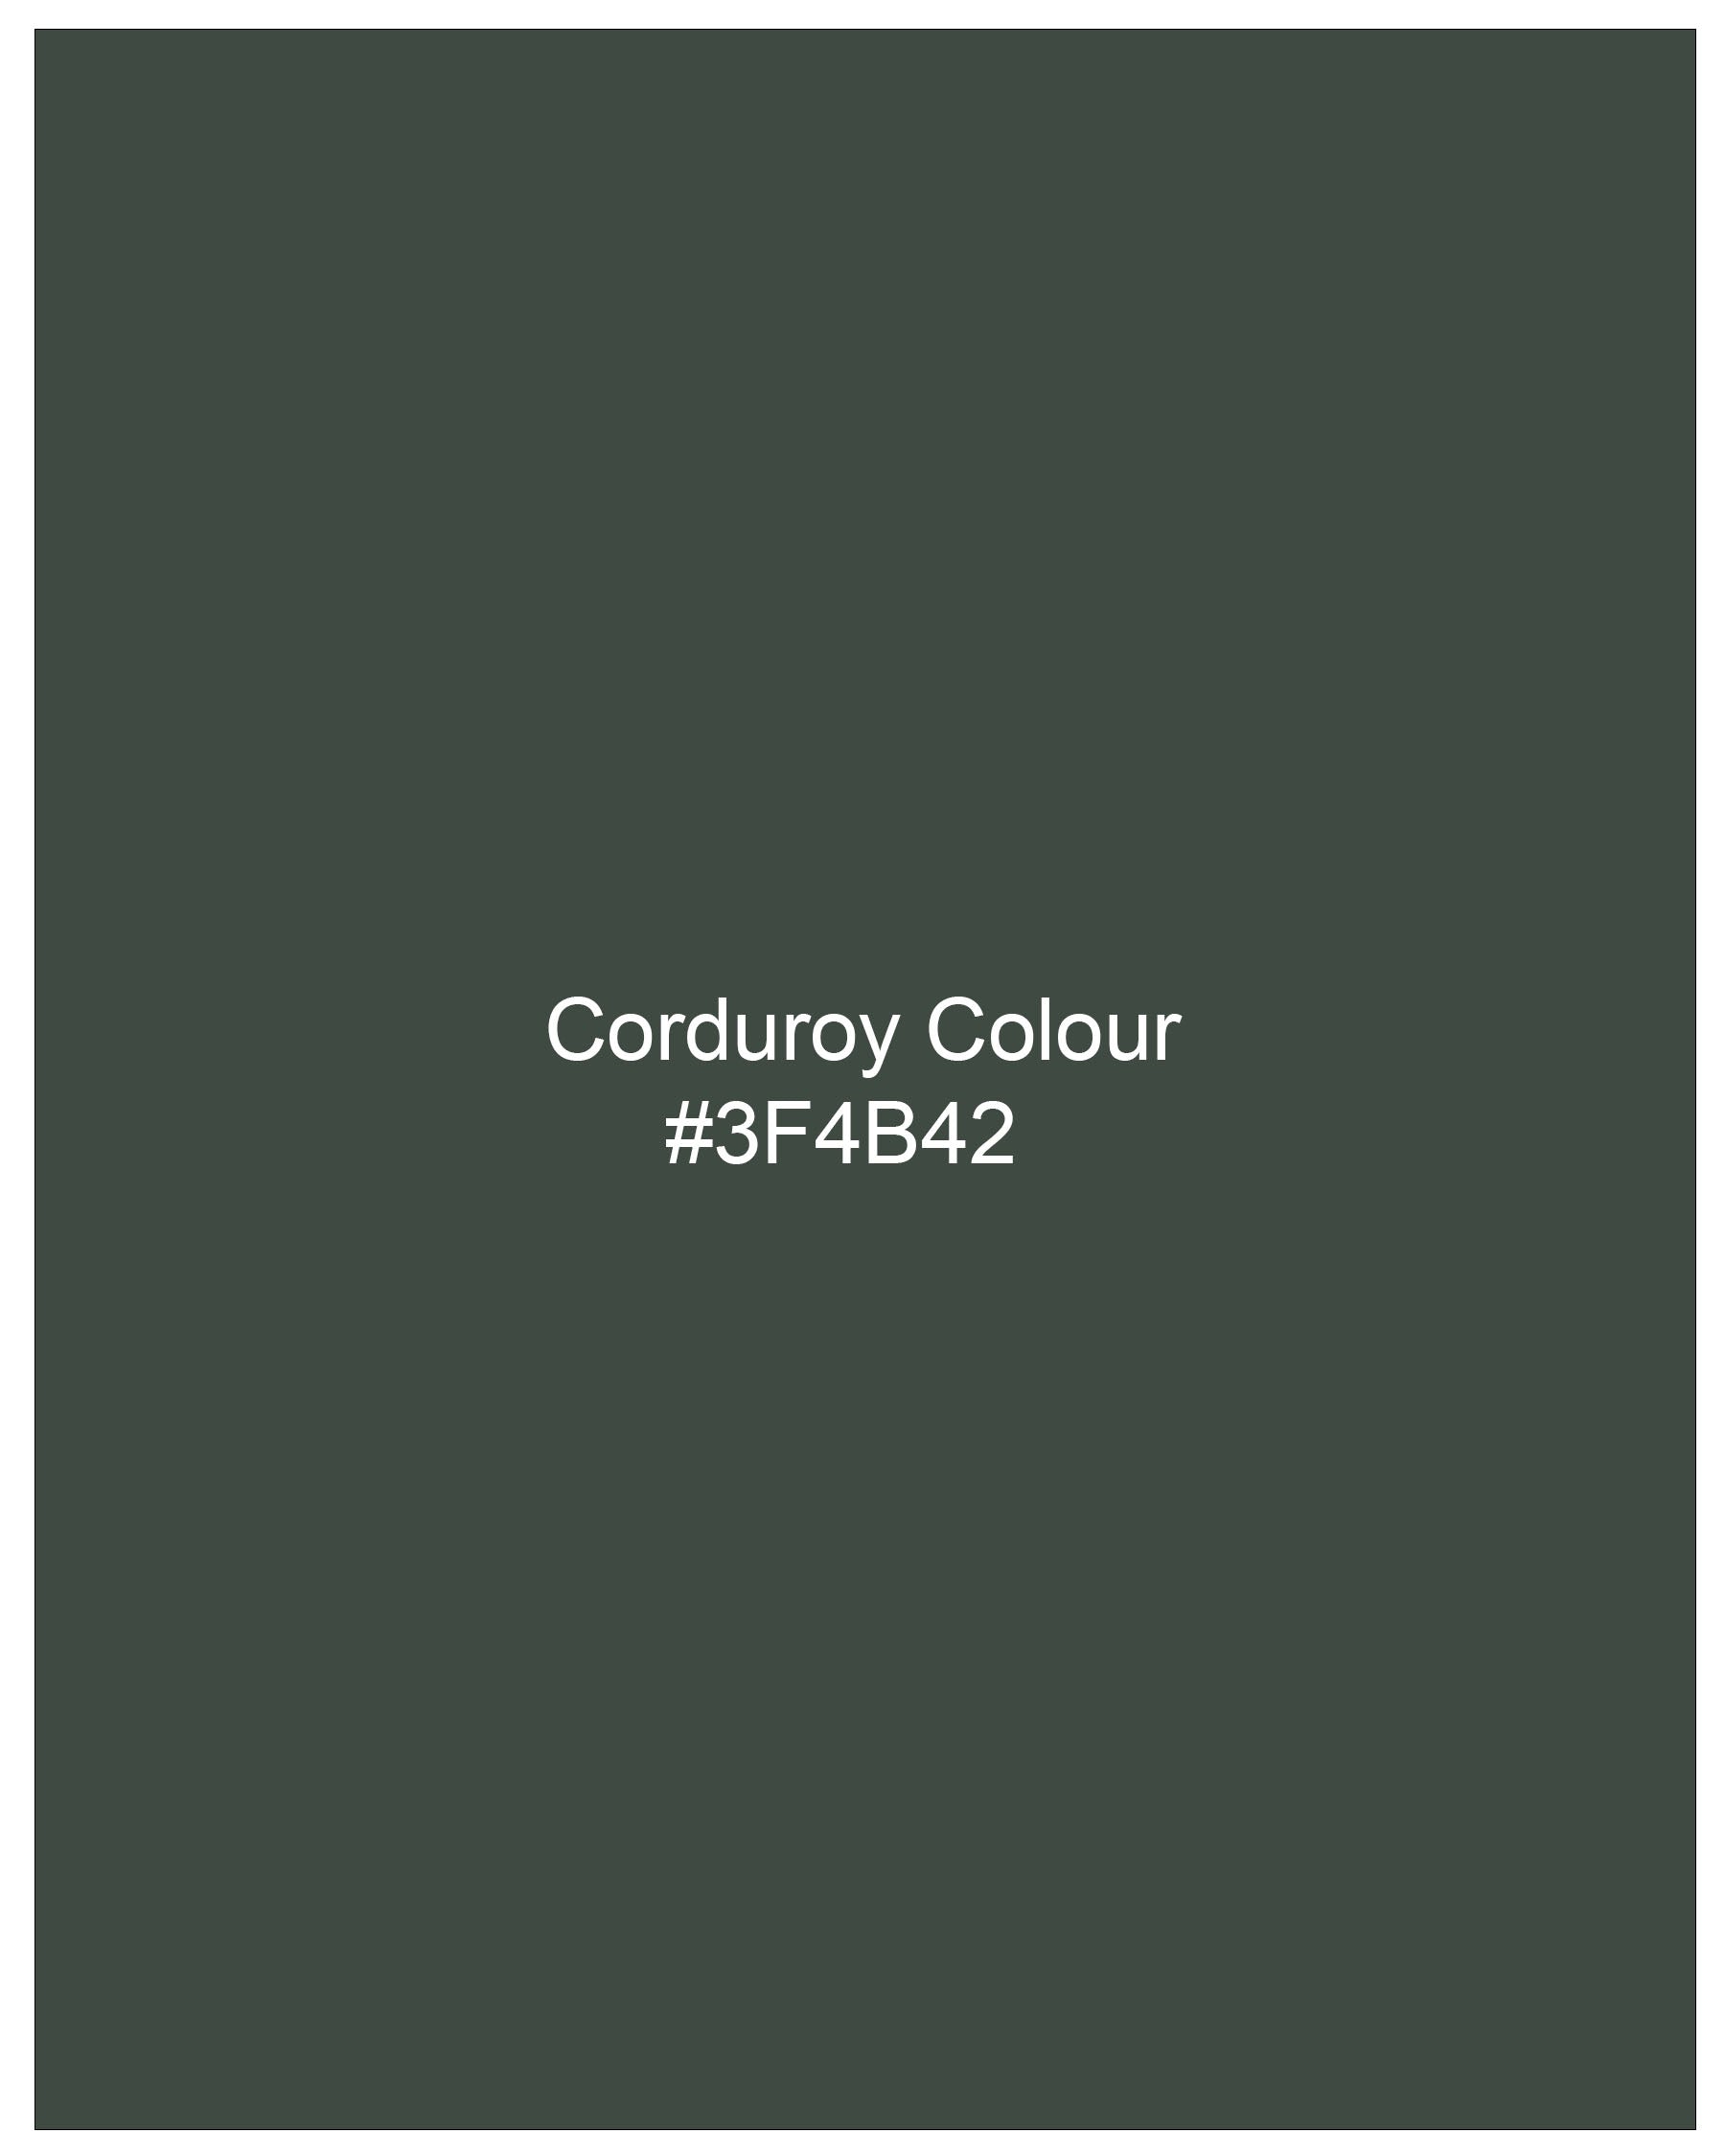 Corduroy Green Plaid Premium Cotton Shirt 7943-38,7943-H-38,7943-39,7943-H-39,7943-40,7943-H-40,7943-42,7943-H-42,7943-44,7943-H-44,7943-46,7943-H-46,7943-48,7943-H-48,7943-50,7943-H-50,7943-52,7943-H-52